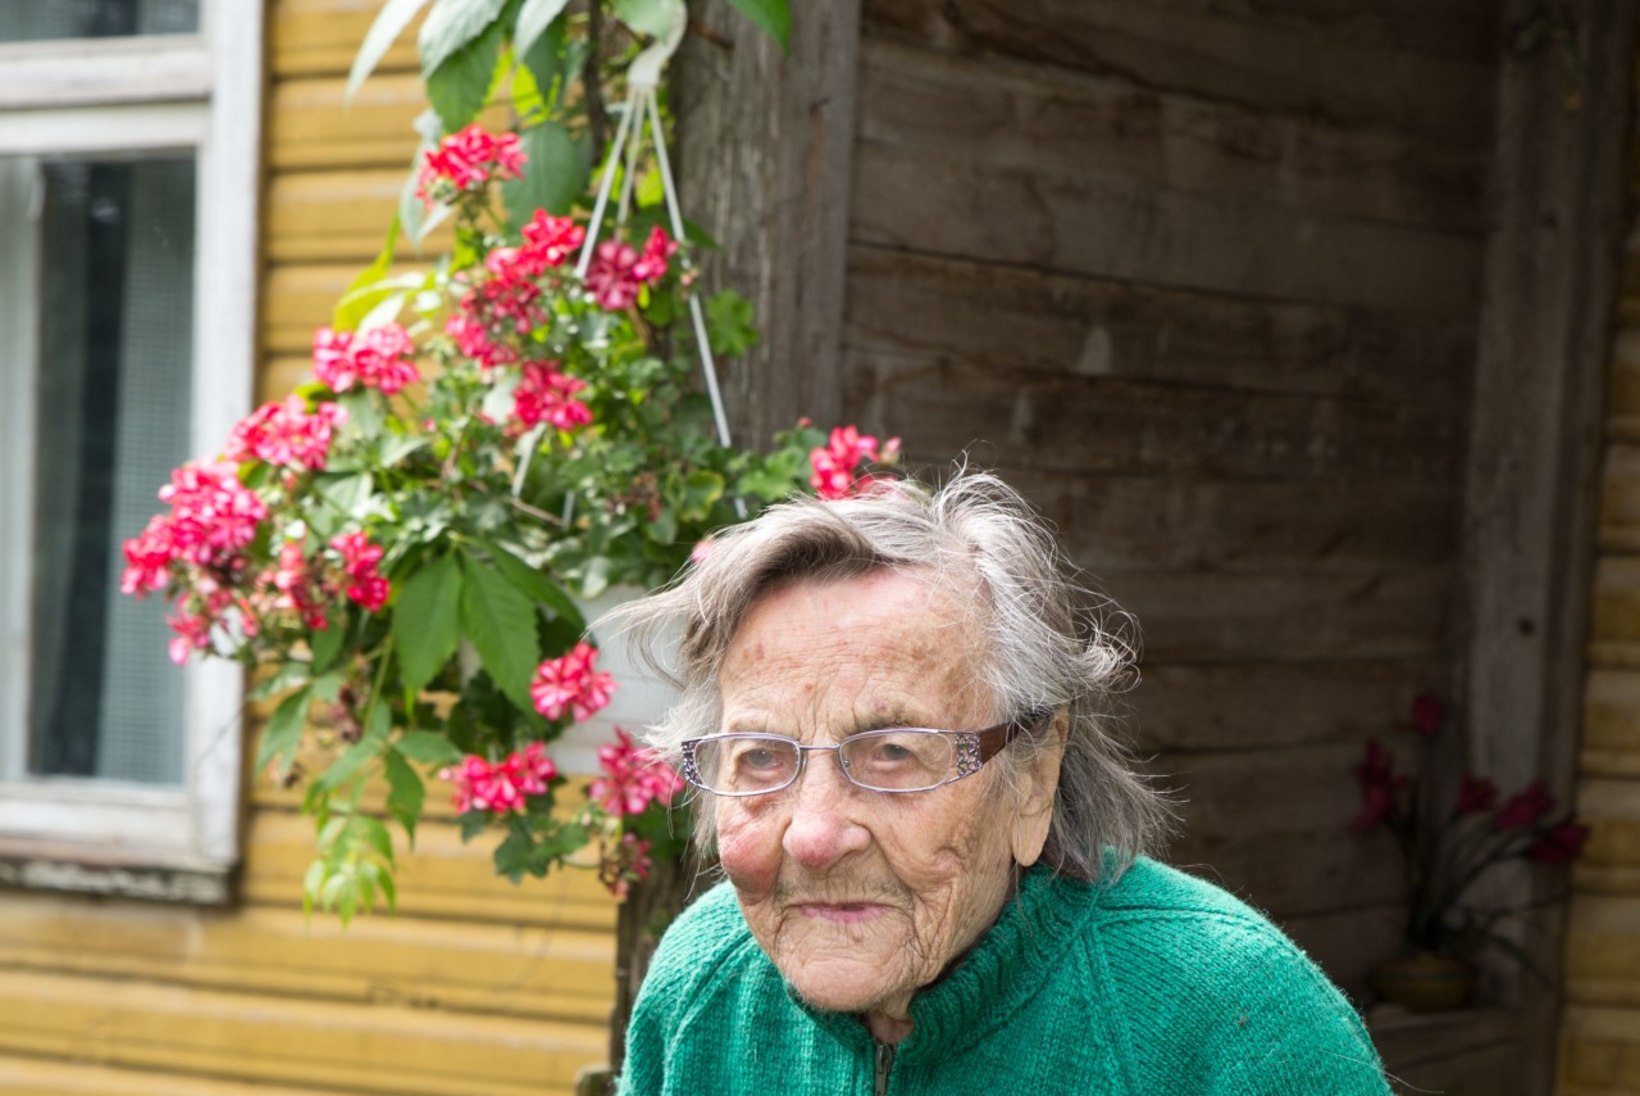 101-aastane eestlanna: olen praegu ikka Nõo valla tšempion, ei ole teist nii vana enam kedagi